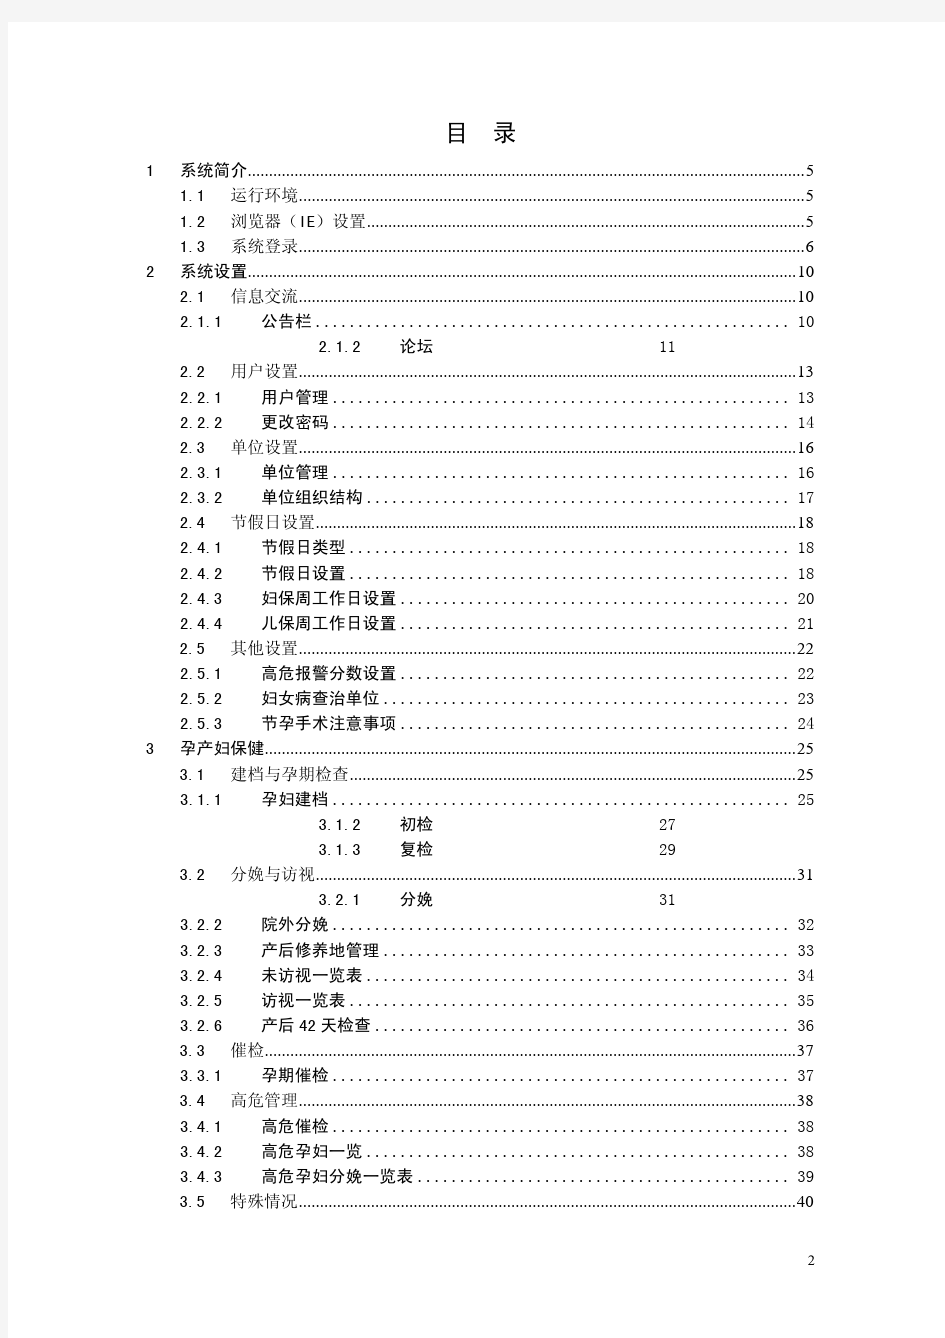 深圳市妇幼保健信息管理系统用户手册